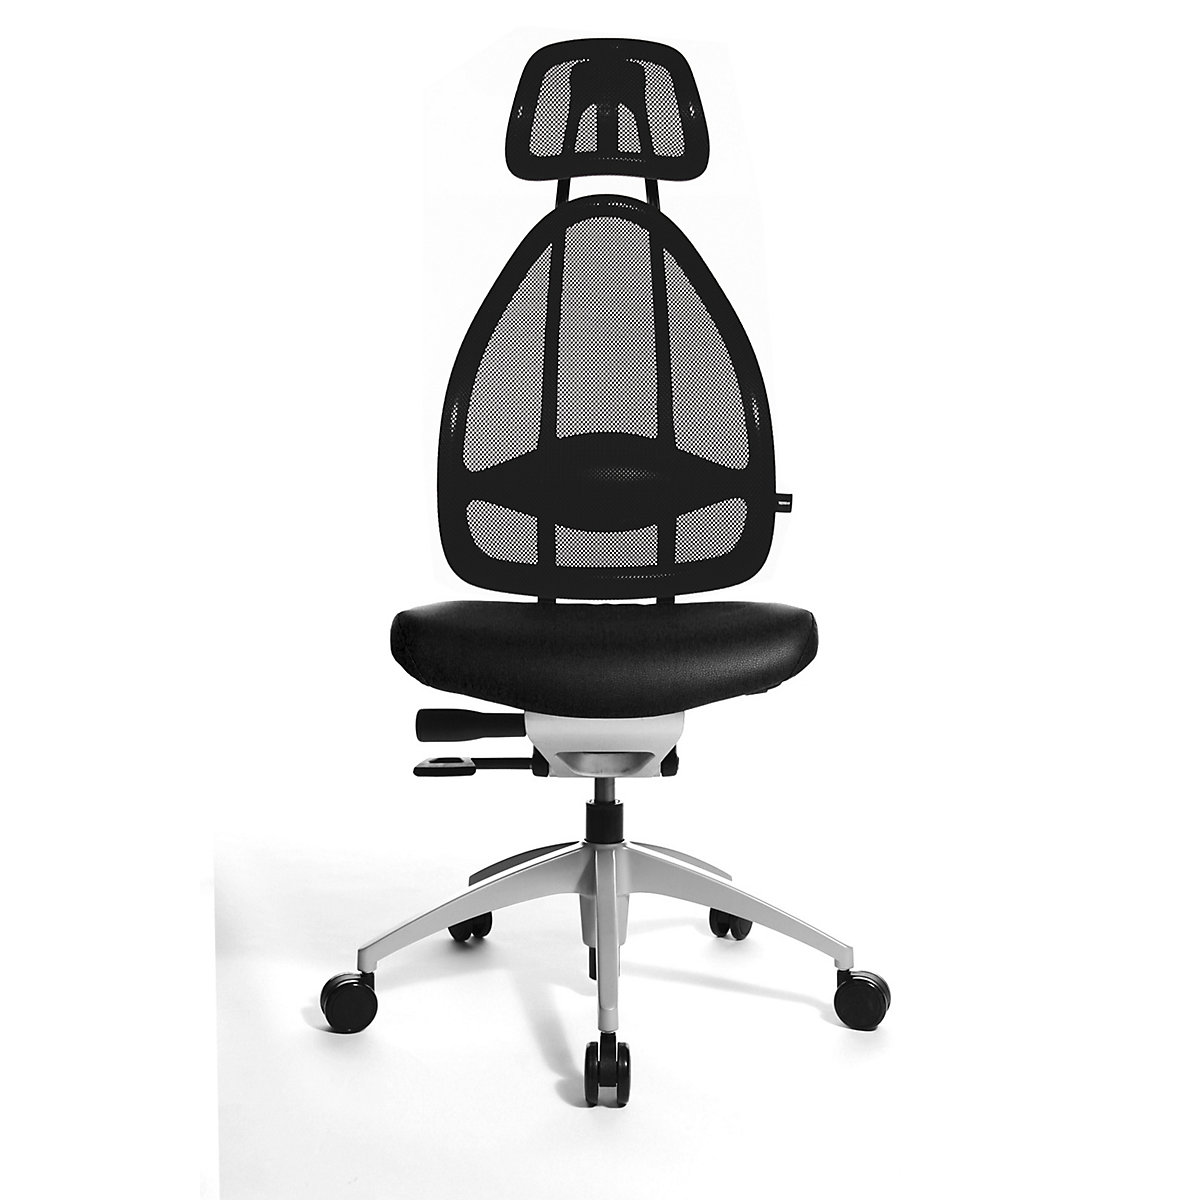 Efektowne obrotowe krzesło biurowe, z zagłówkiem i oparciem siatkowym – Topstar